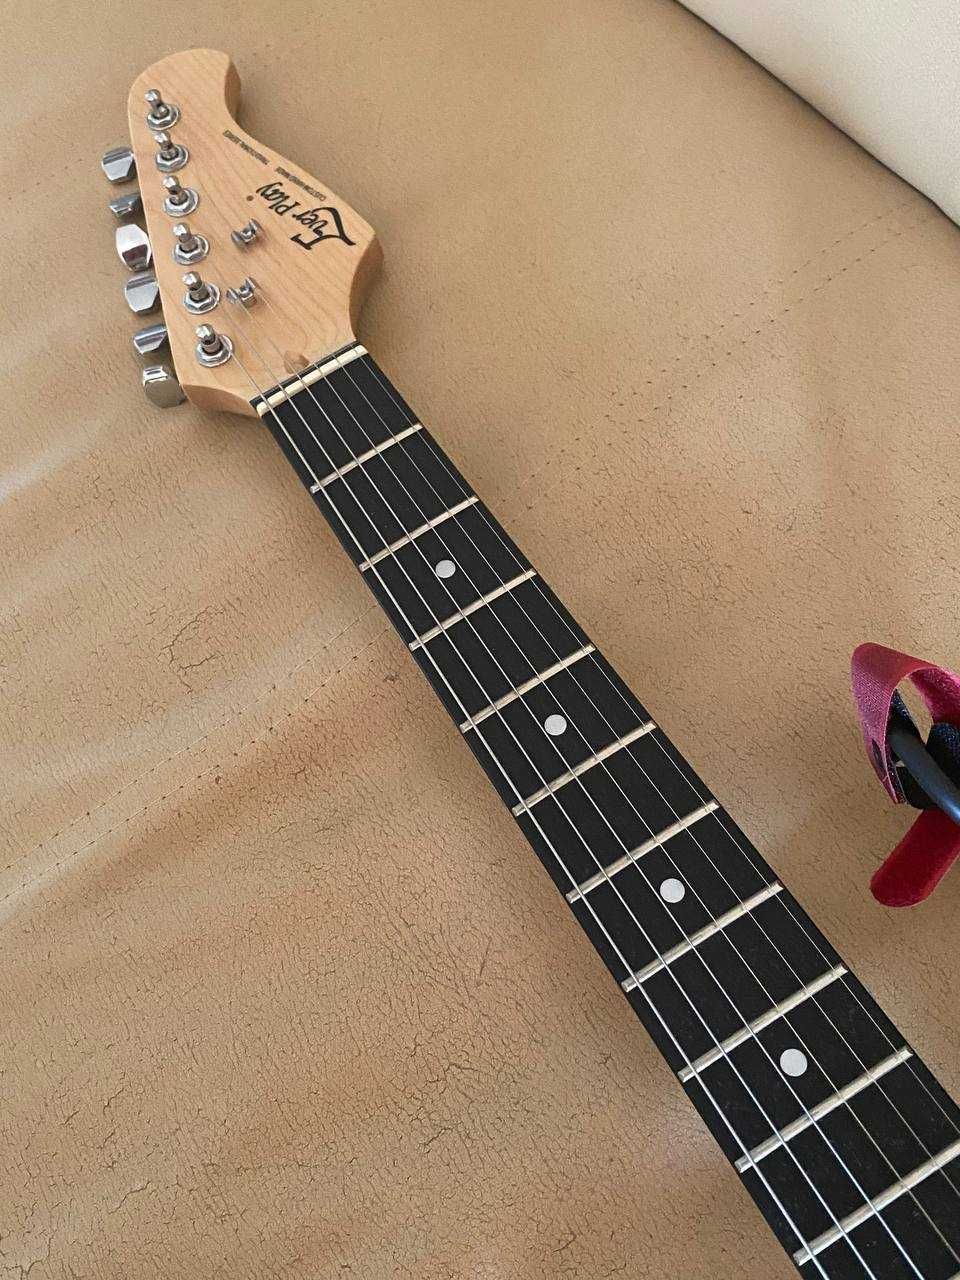 ZESTAW Gitara elektryczna Ever-Play st-2 + Karta dźwiękowa + kable